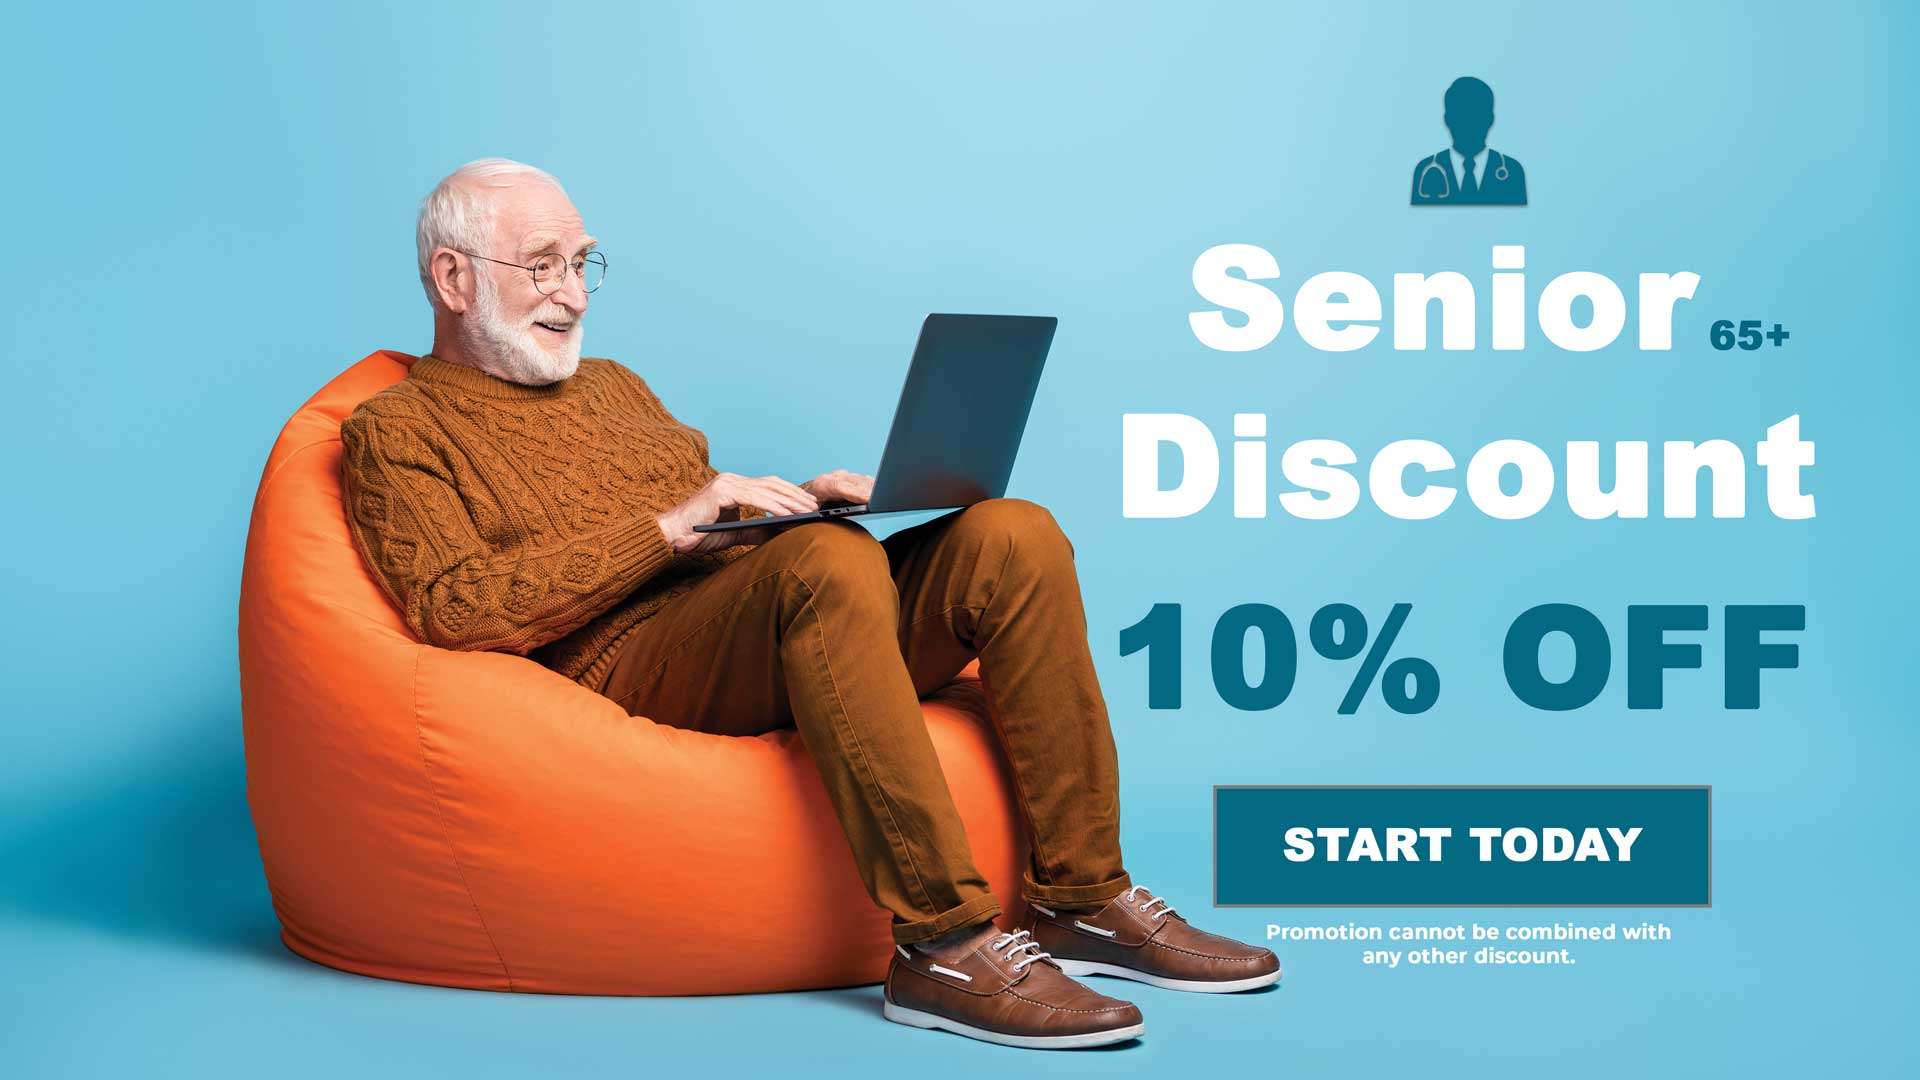 BudSenior senior discount 10% off